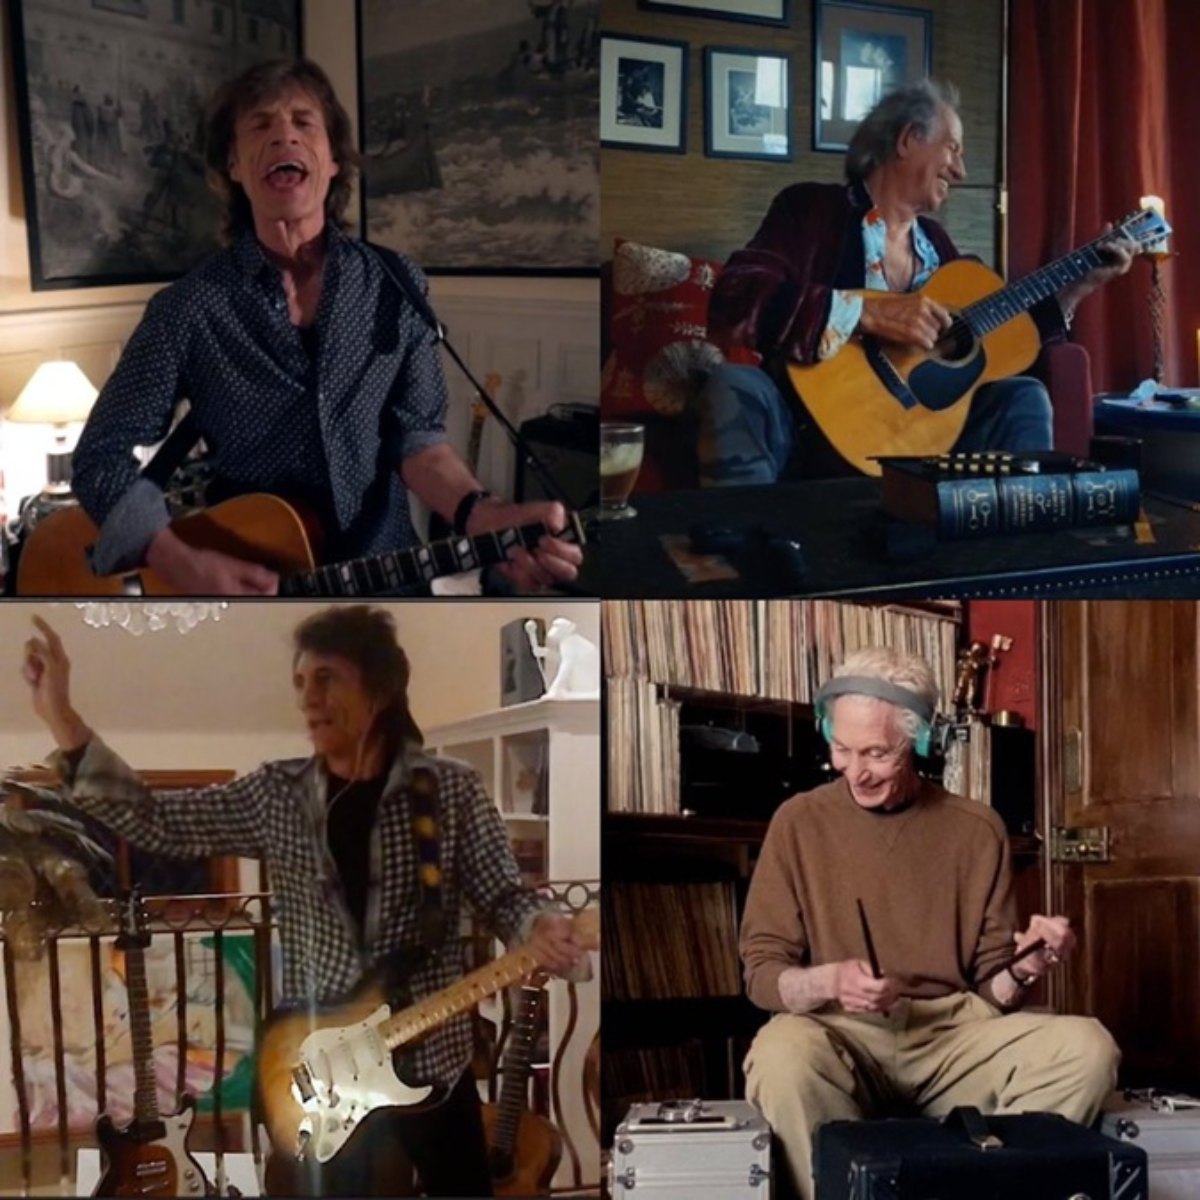 "Die Rolling Stones proben aktiv während der Quarantäne!